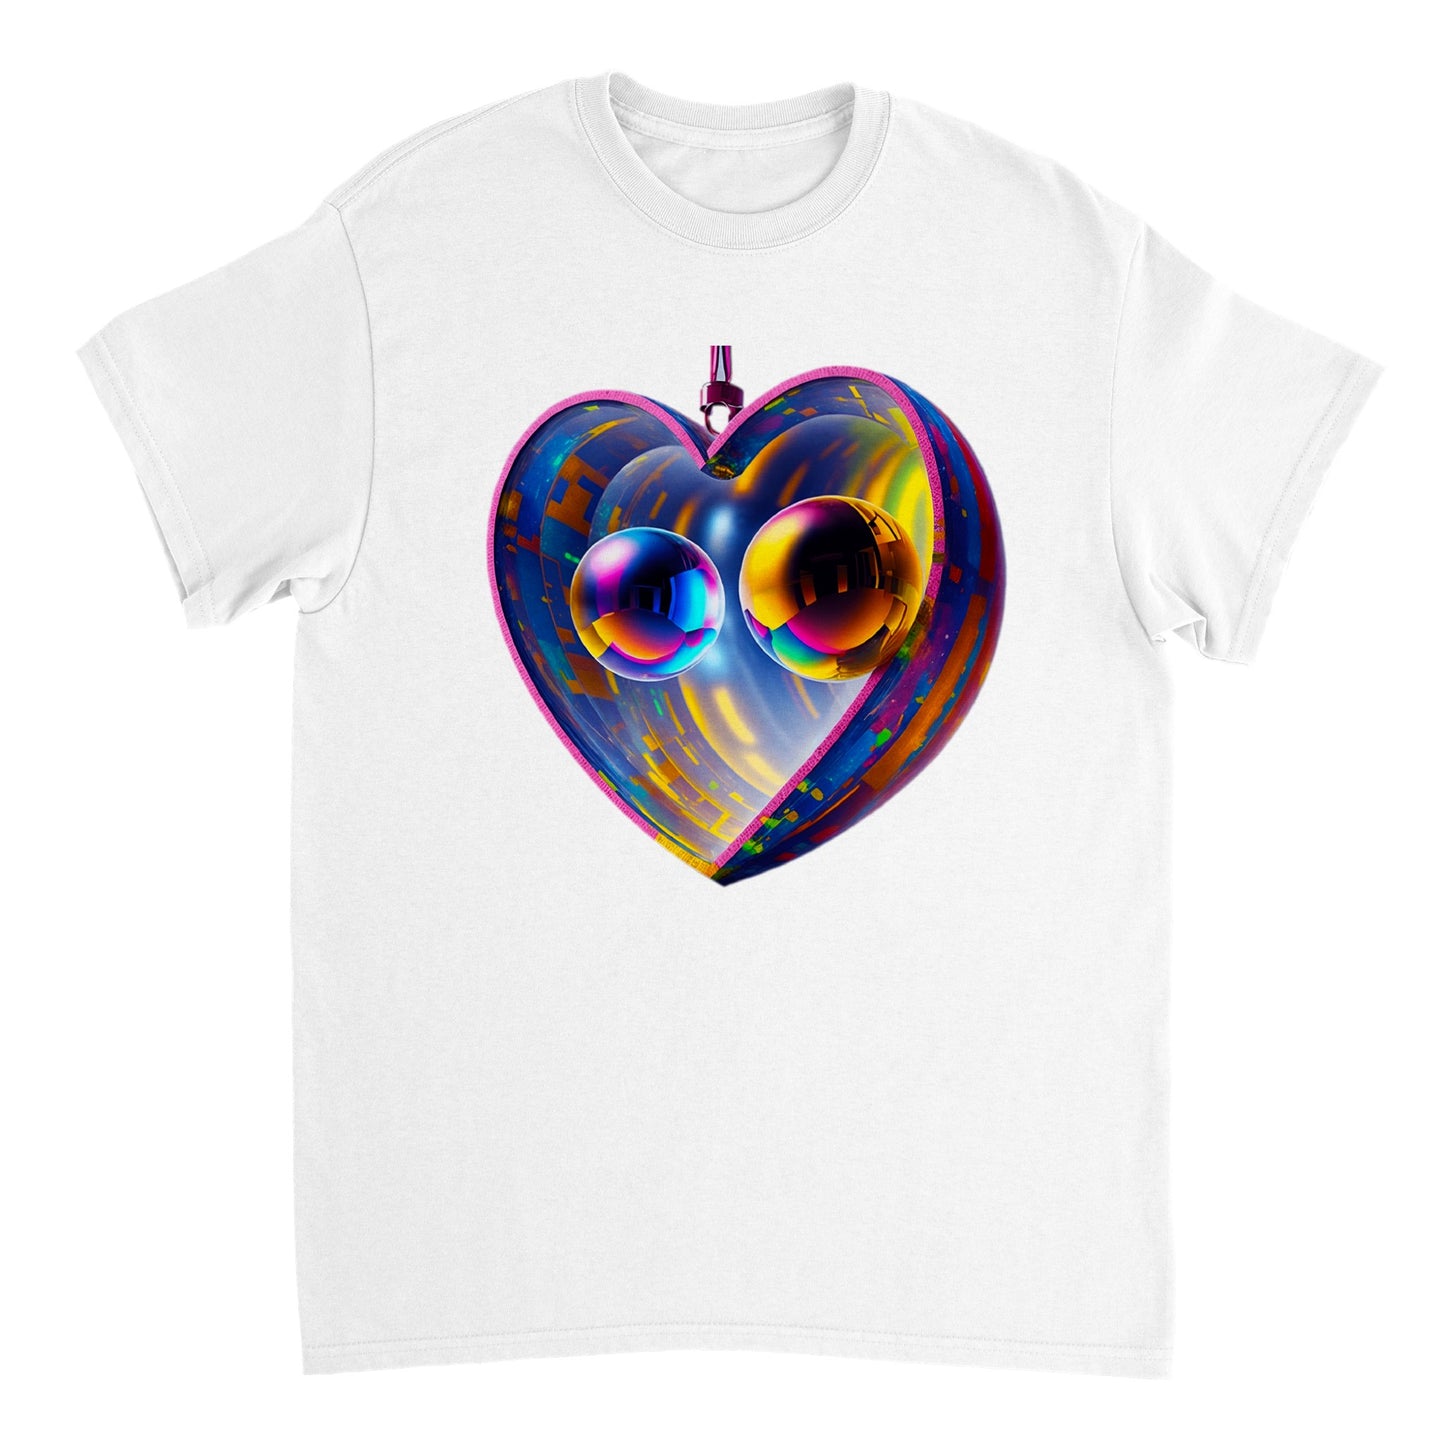 Love Heart - Heavyweight Unisex Crewneck T-shirt 93